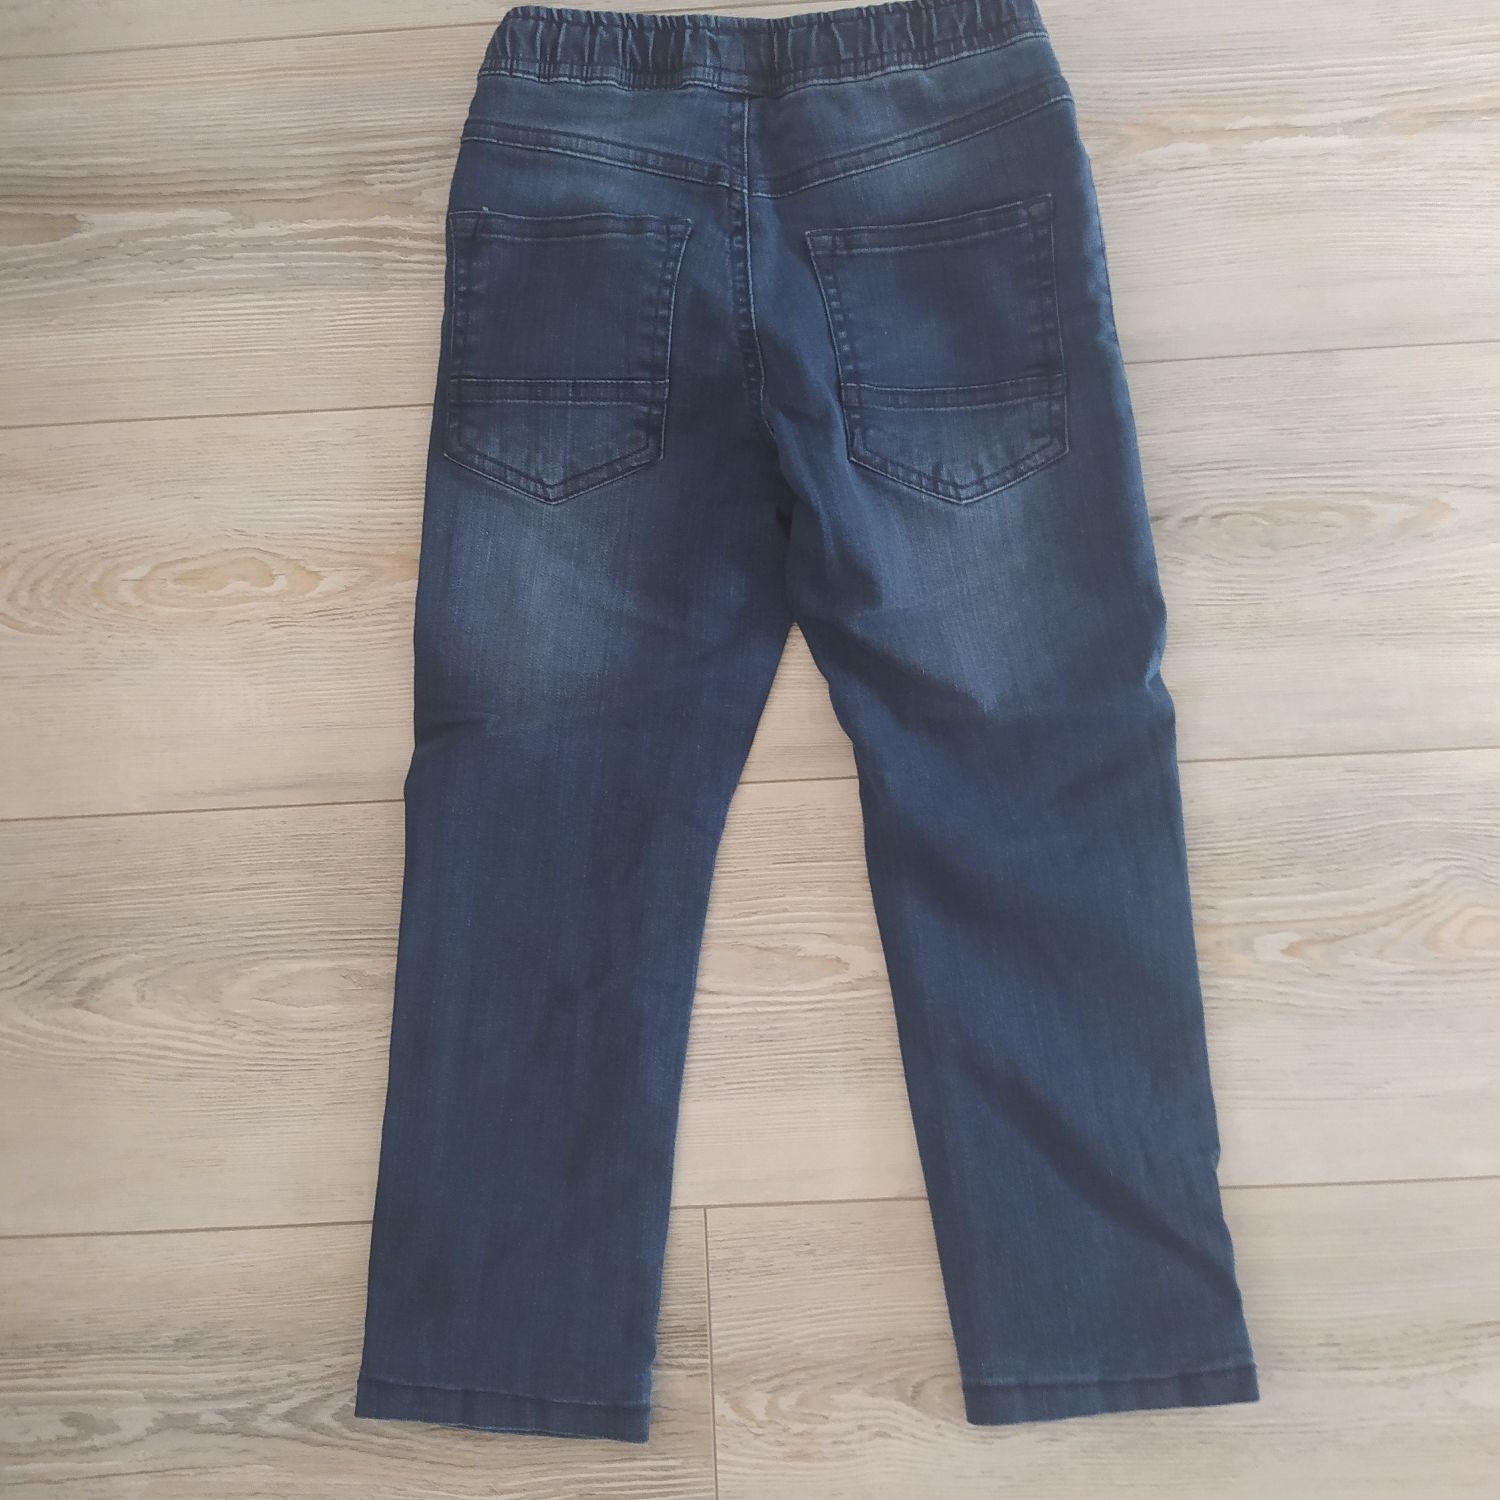 Spodnie jeansy ocieplane 5.10.15 - nowe - 116